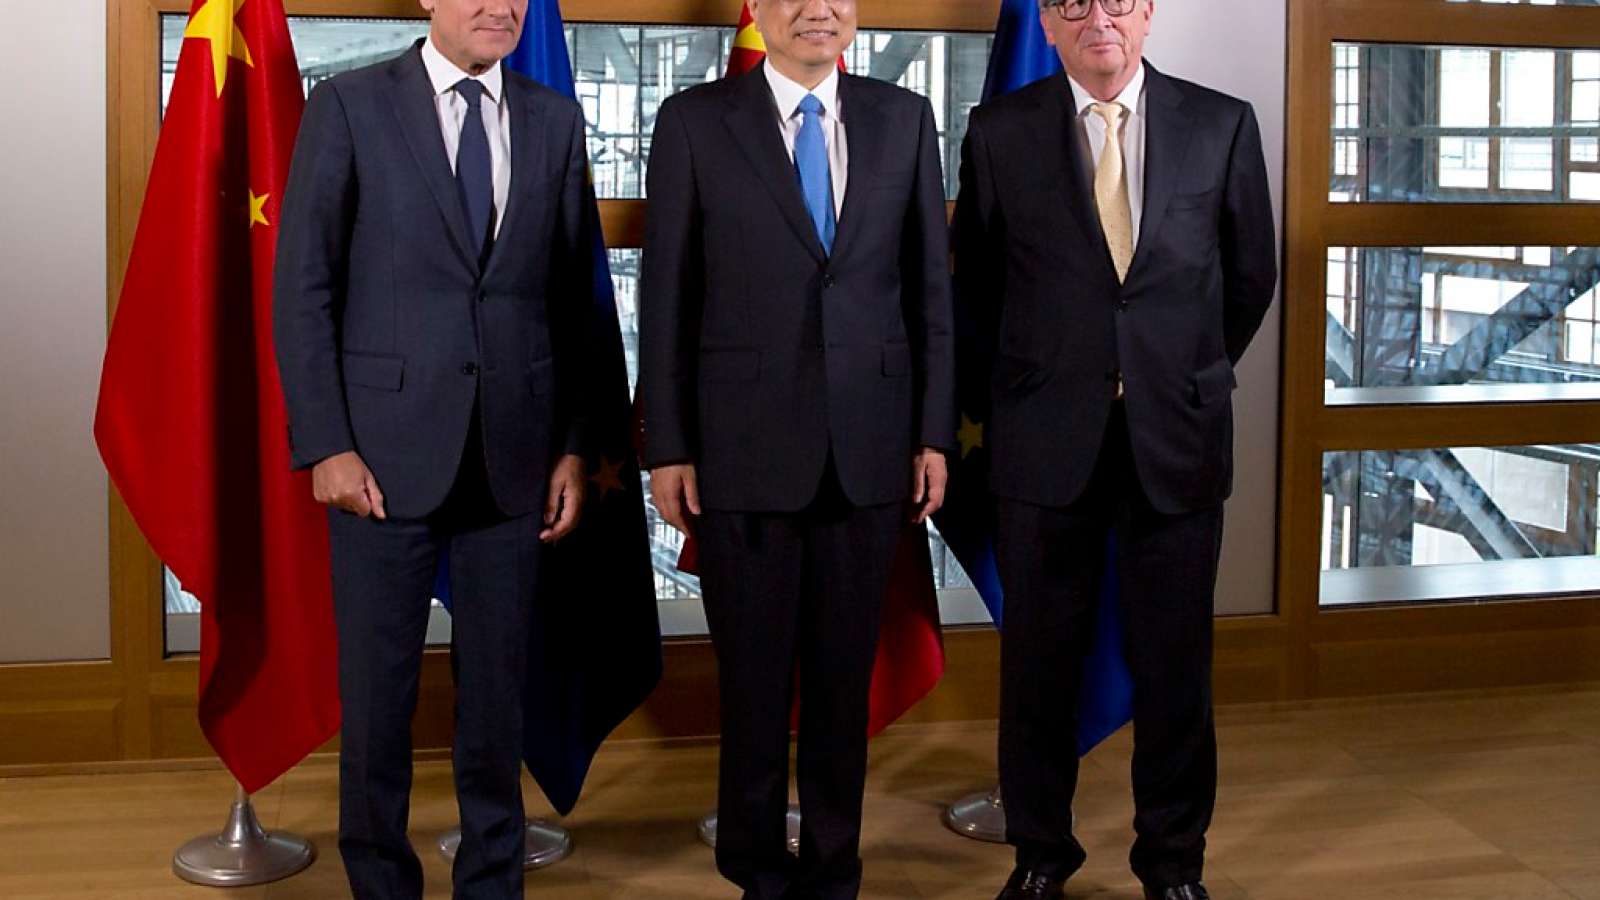 Die EU-Spitzenvertreter Jean-Claude Juncker (r) und Donald Tusk (l) mit ihrem Gast, Chinas Regierungschef Li Keqiang